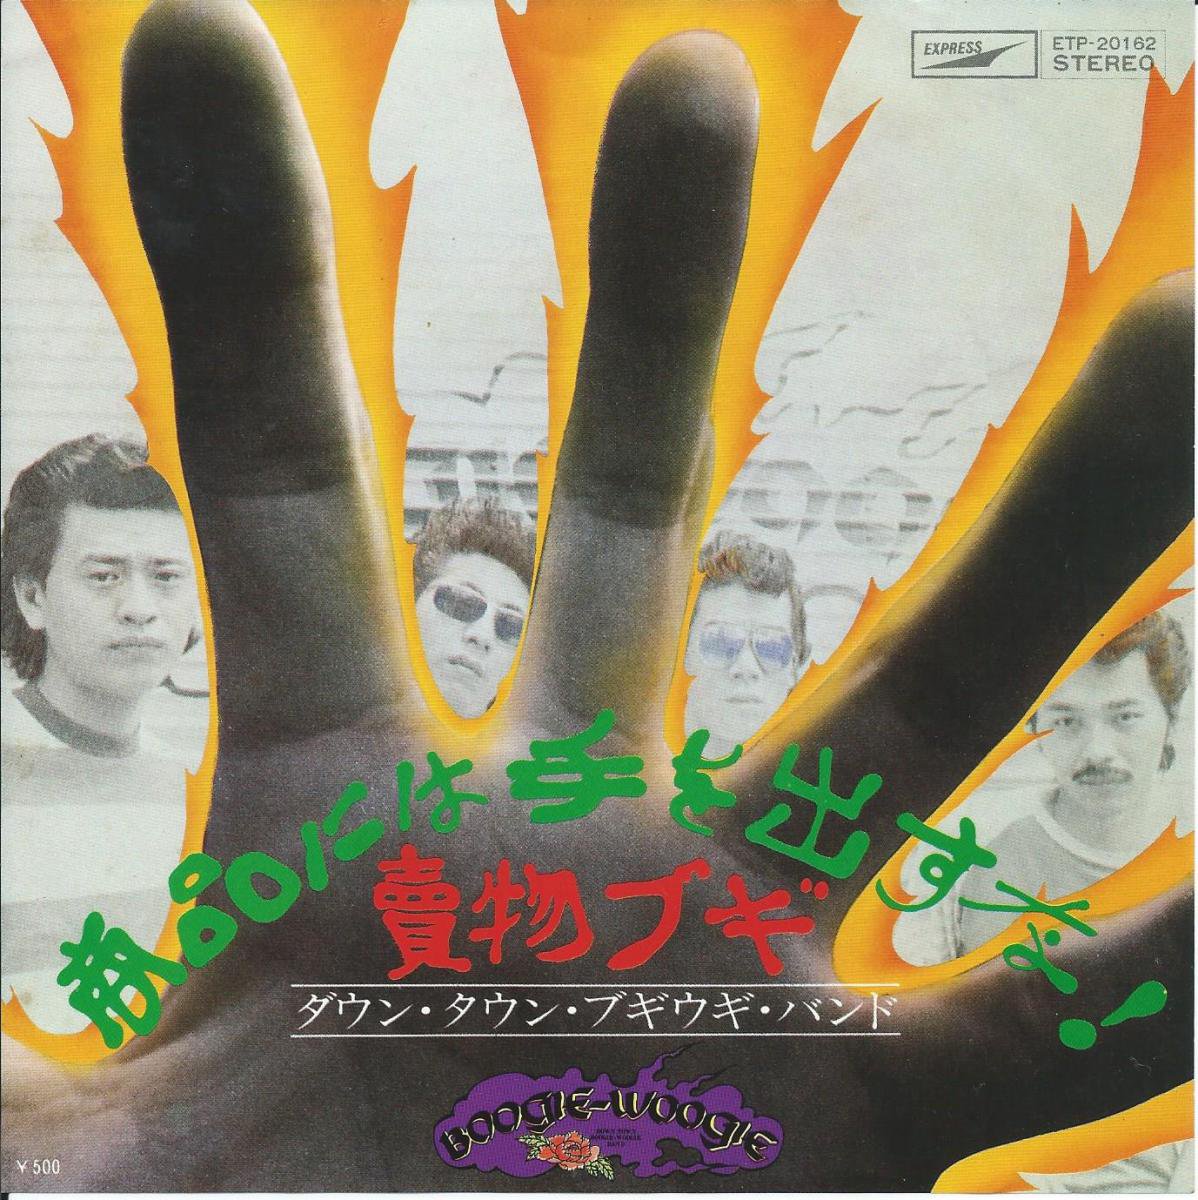 宇崎竜童　ダウン・タウン・ブギウギ・バンド　LPレコード　手書き歌詞カードロックバンド